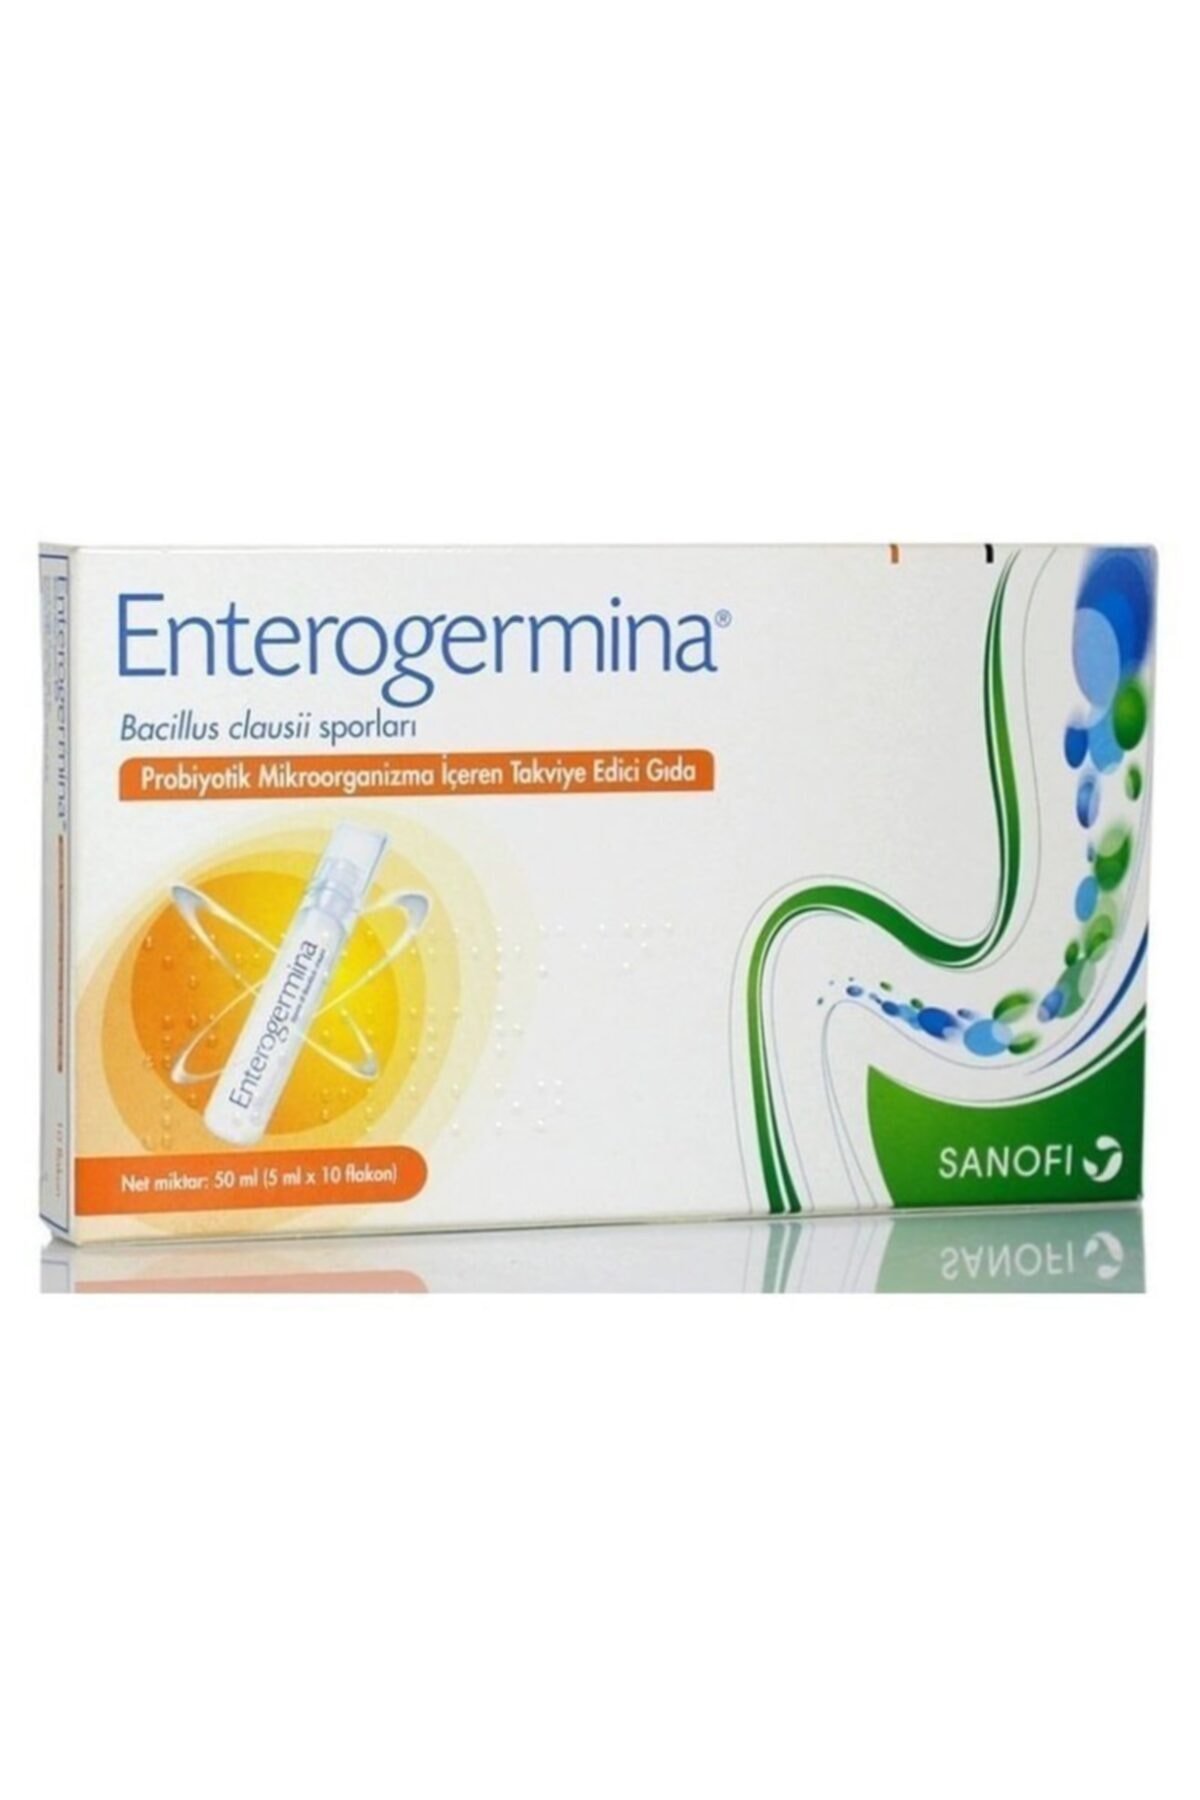 Enterogermina Yetişkin 5 ml × 10 Flakon ÜRÜN